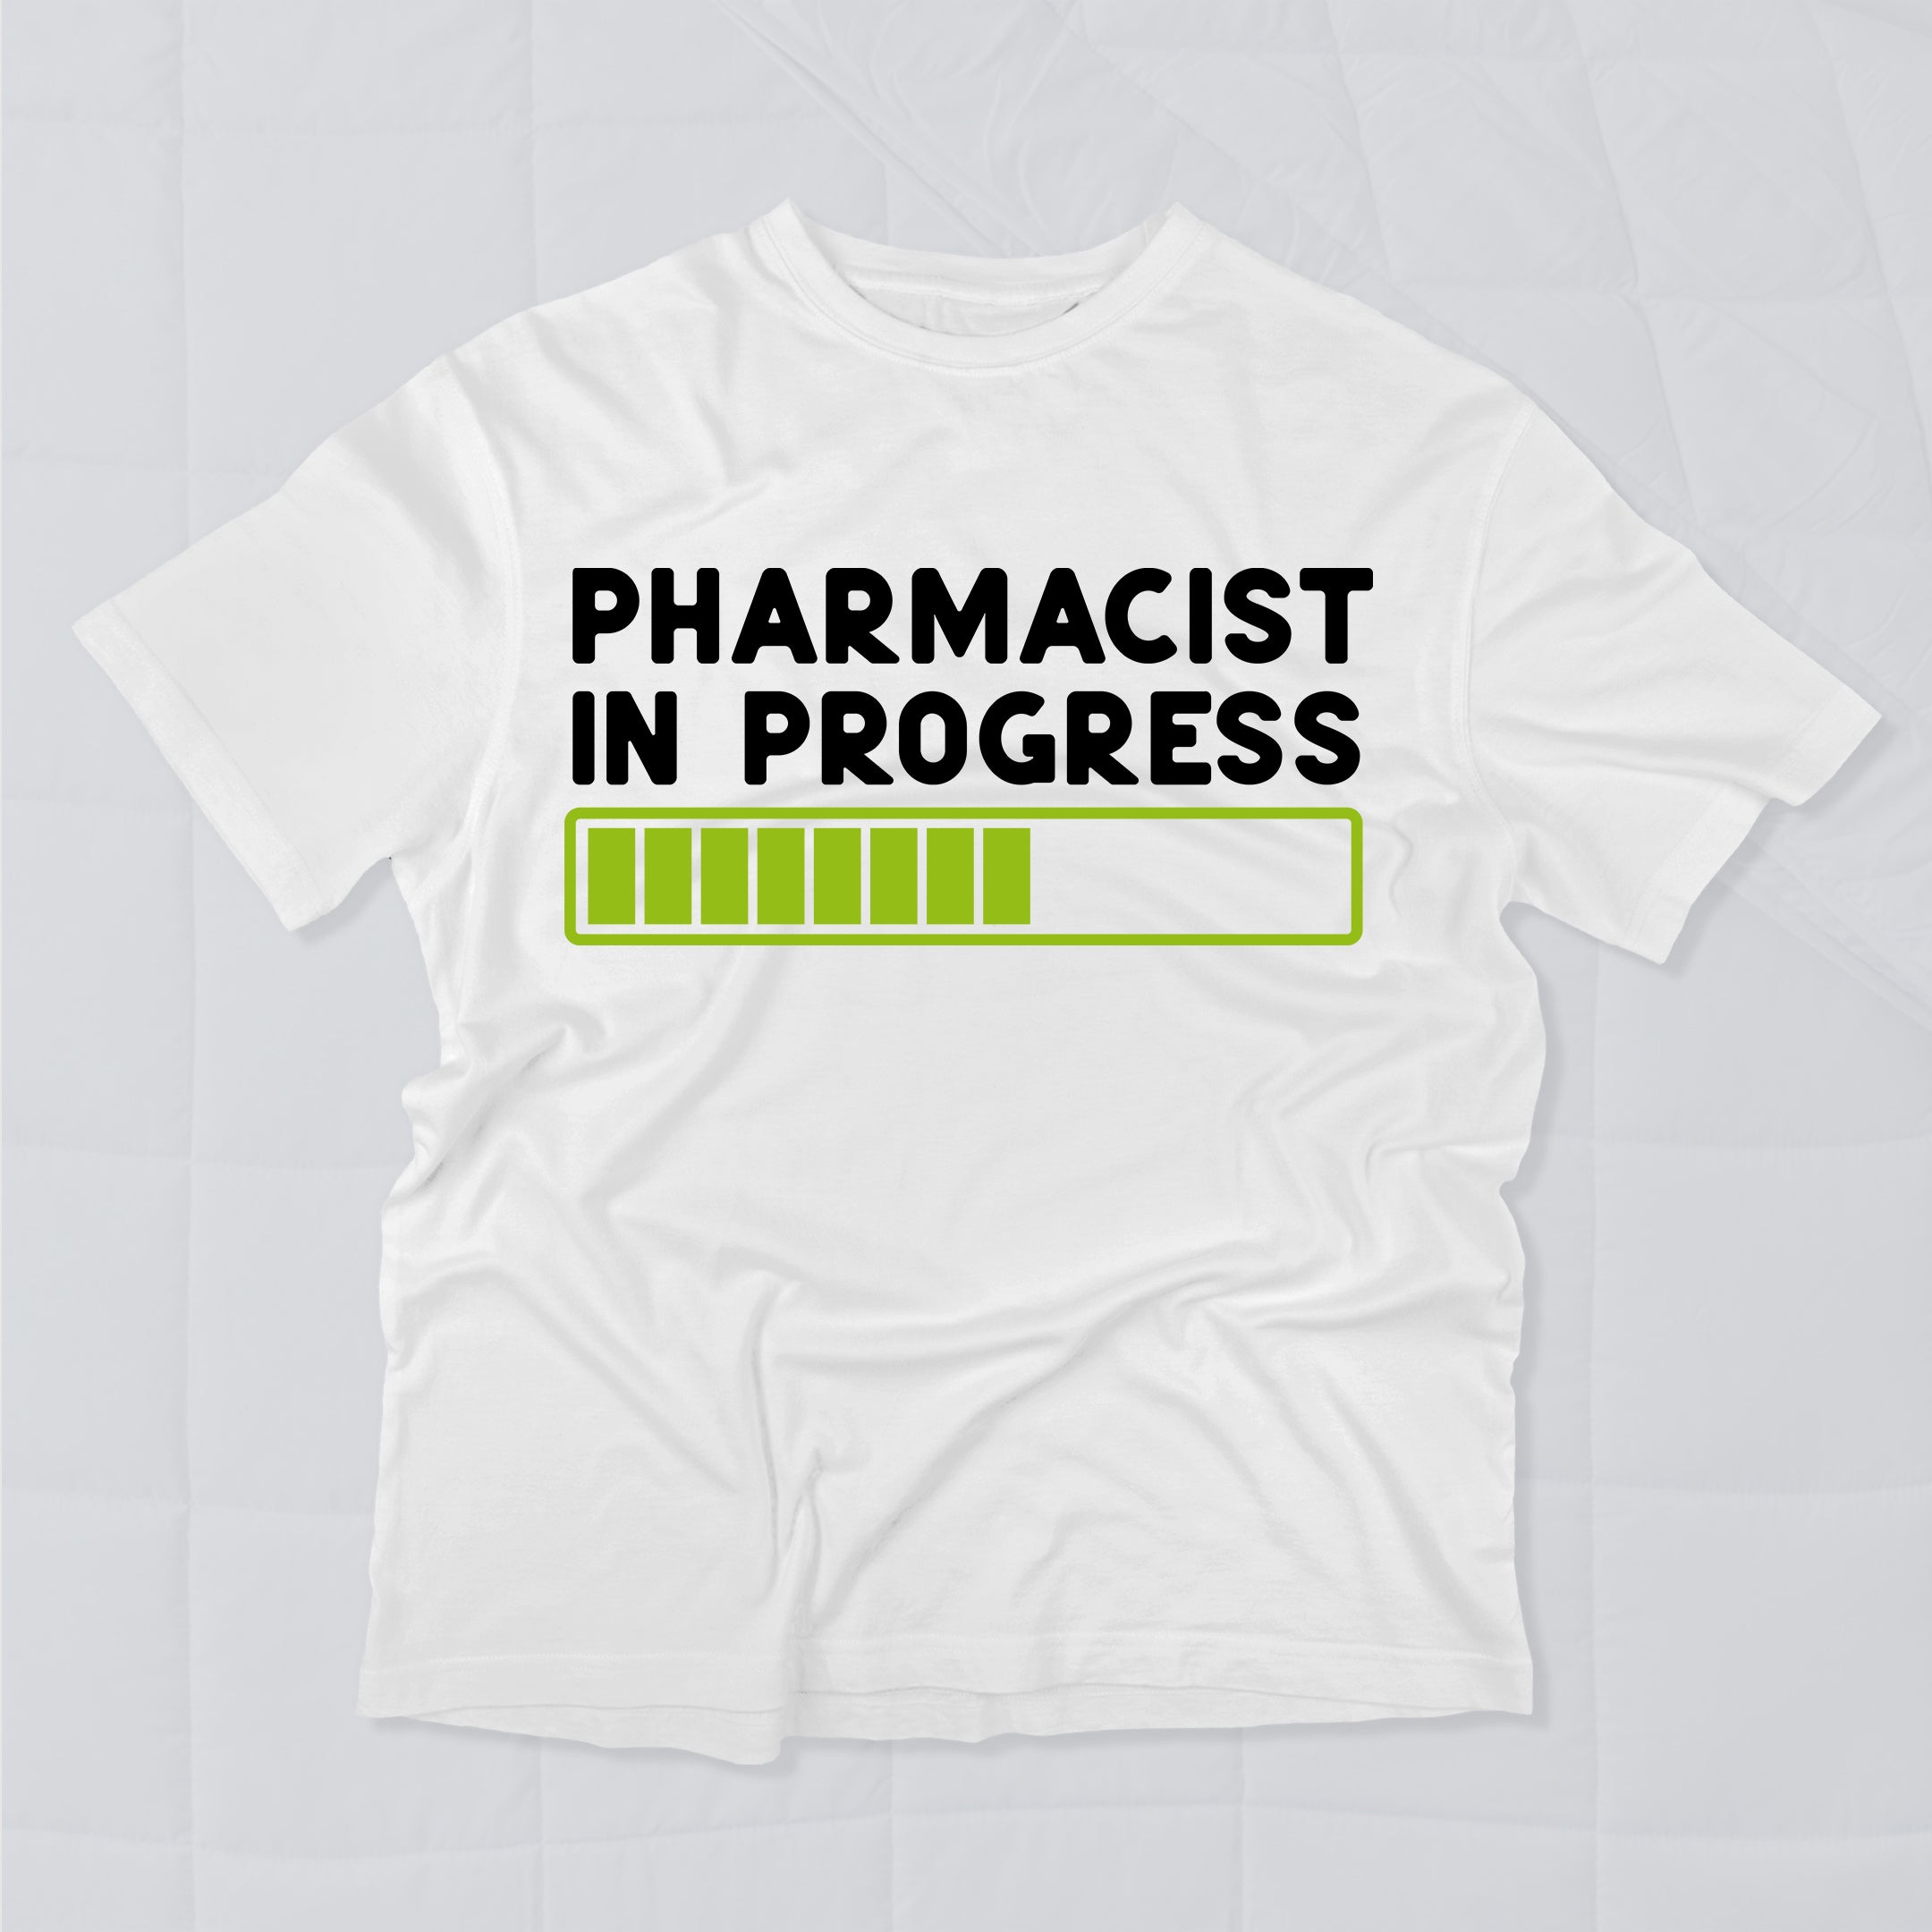 Pharmacist in Progress